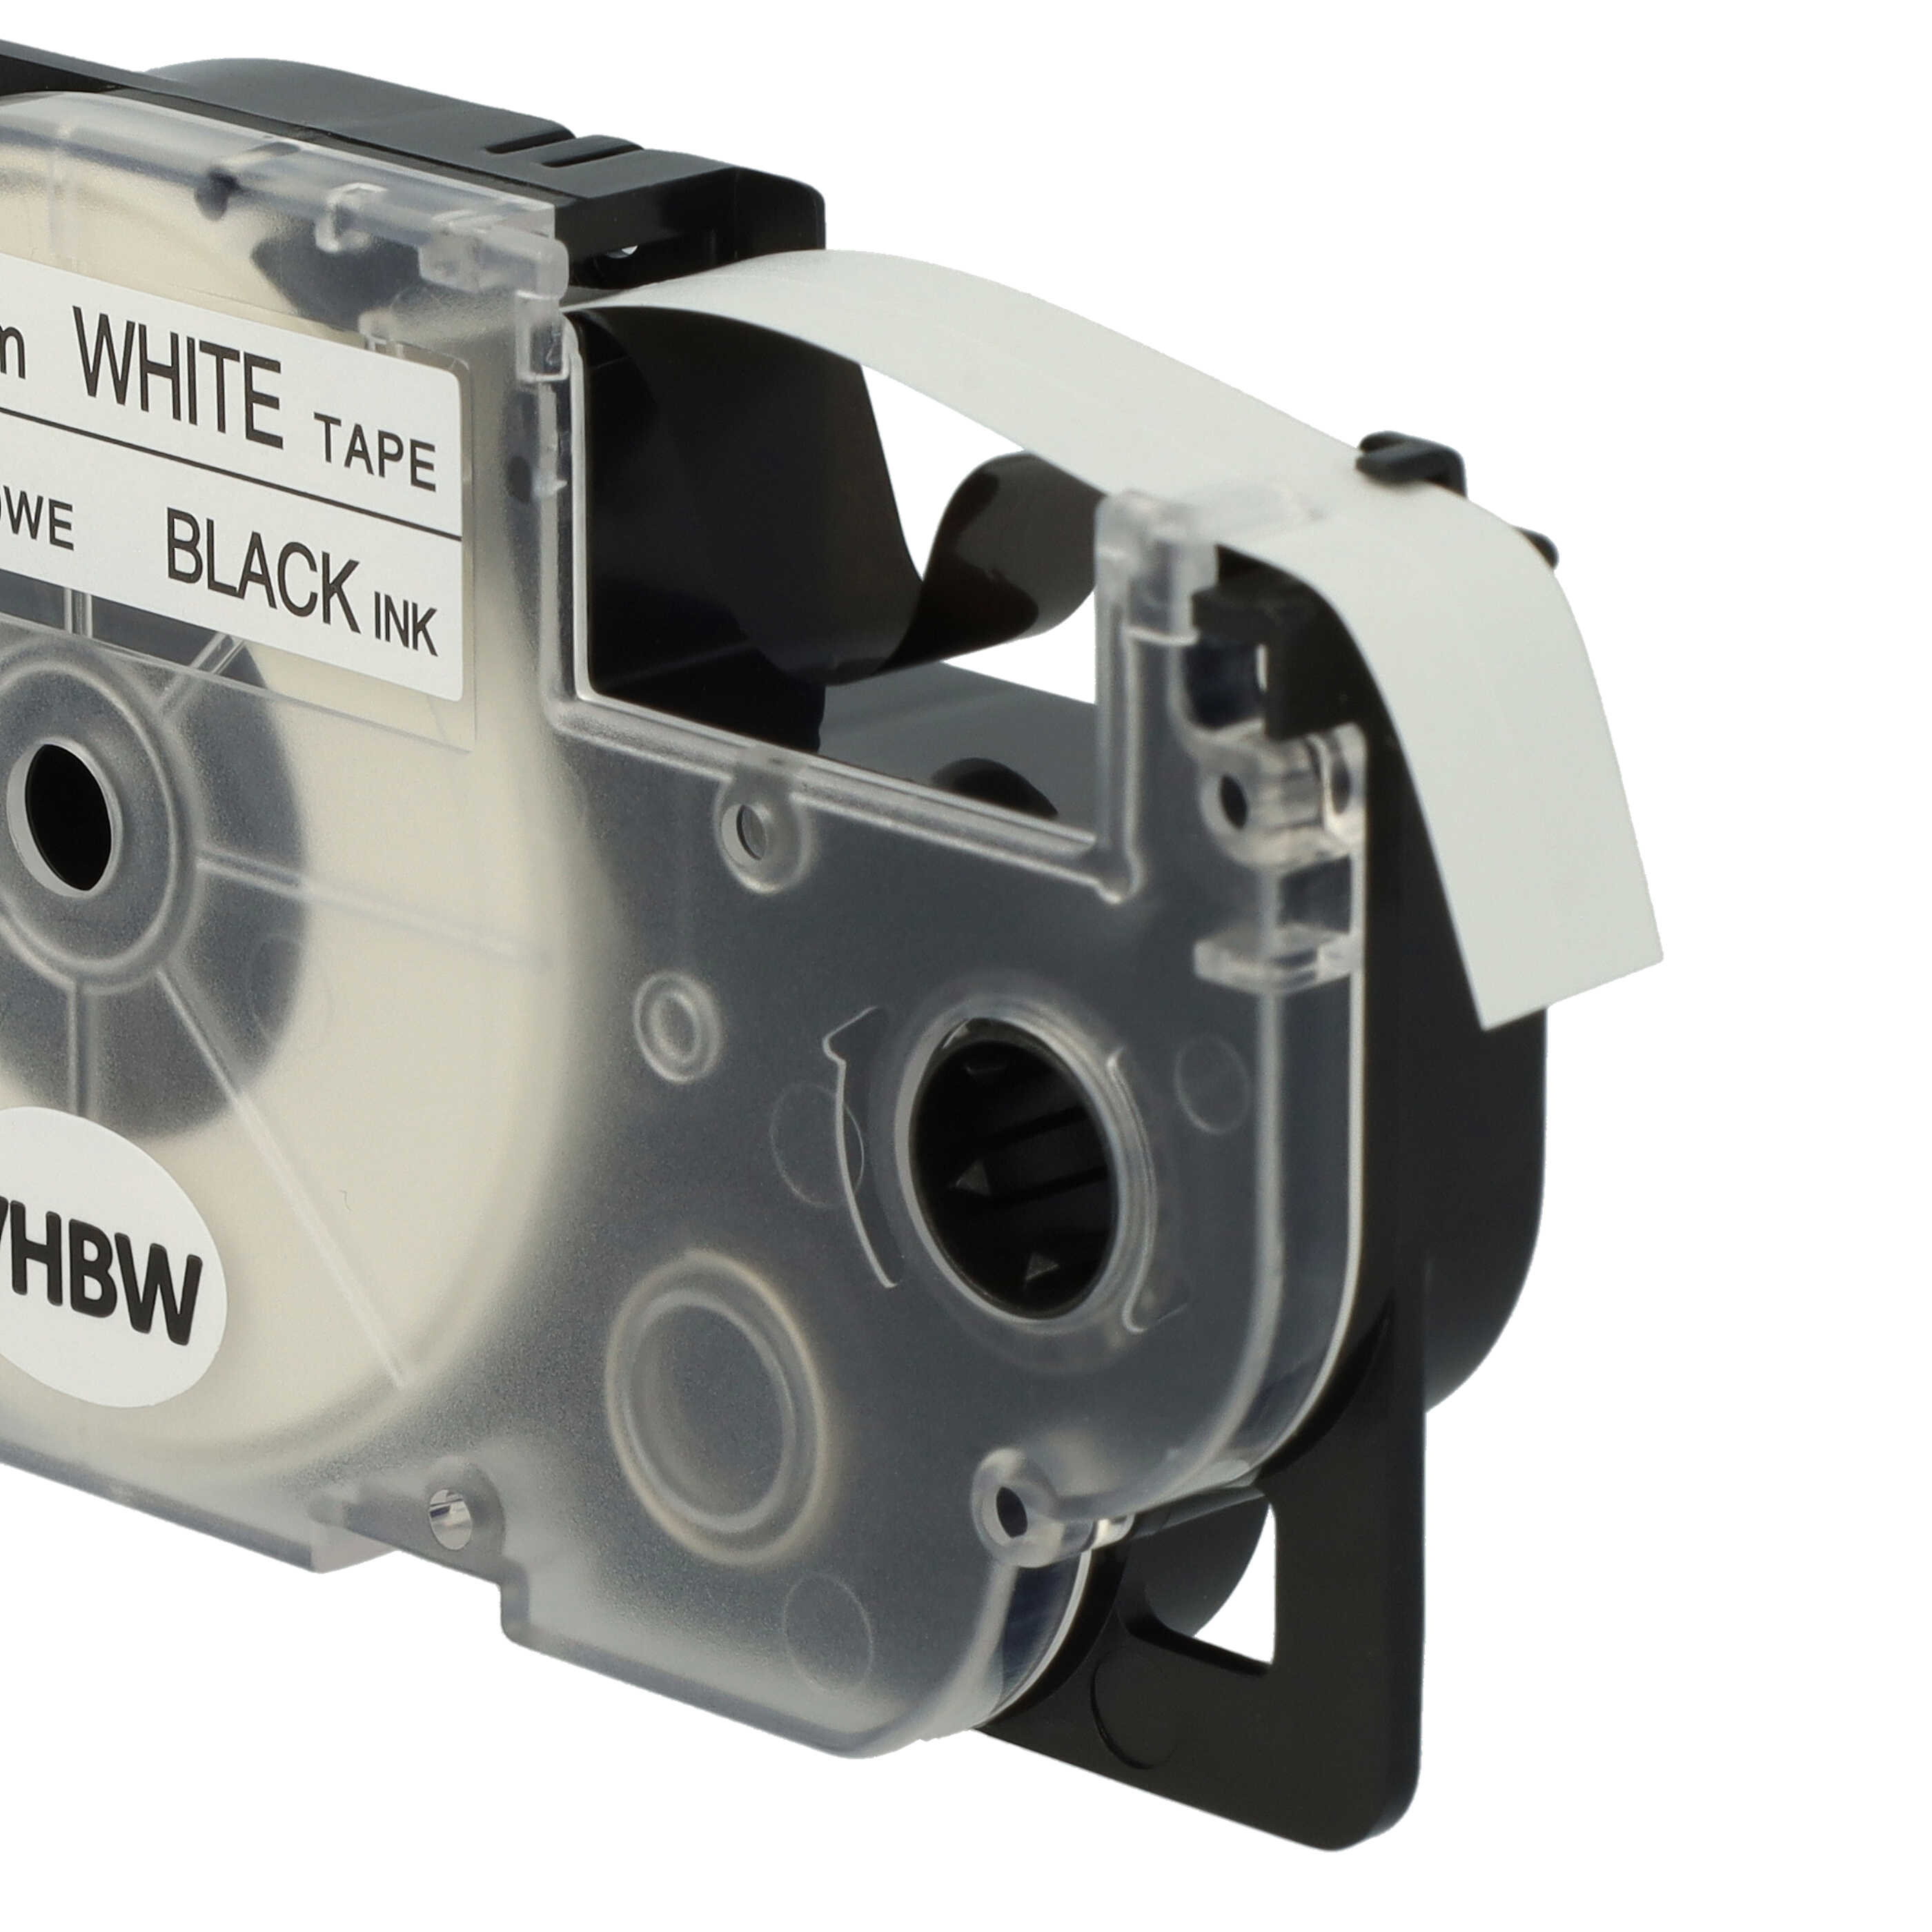 Cassette à ruban remplace Casio XR-9WE1, XR-9WE - 9mm lettrage Noir ruban Blanc